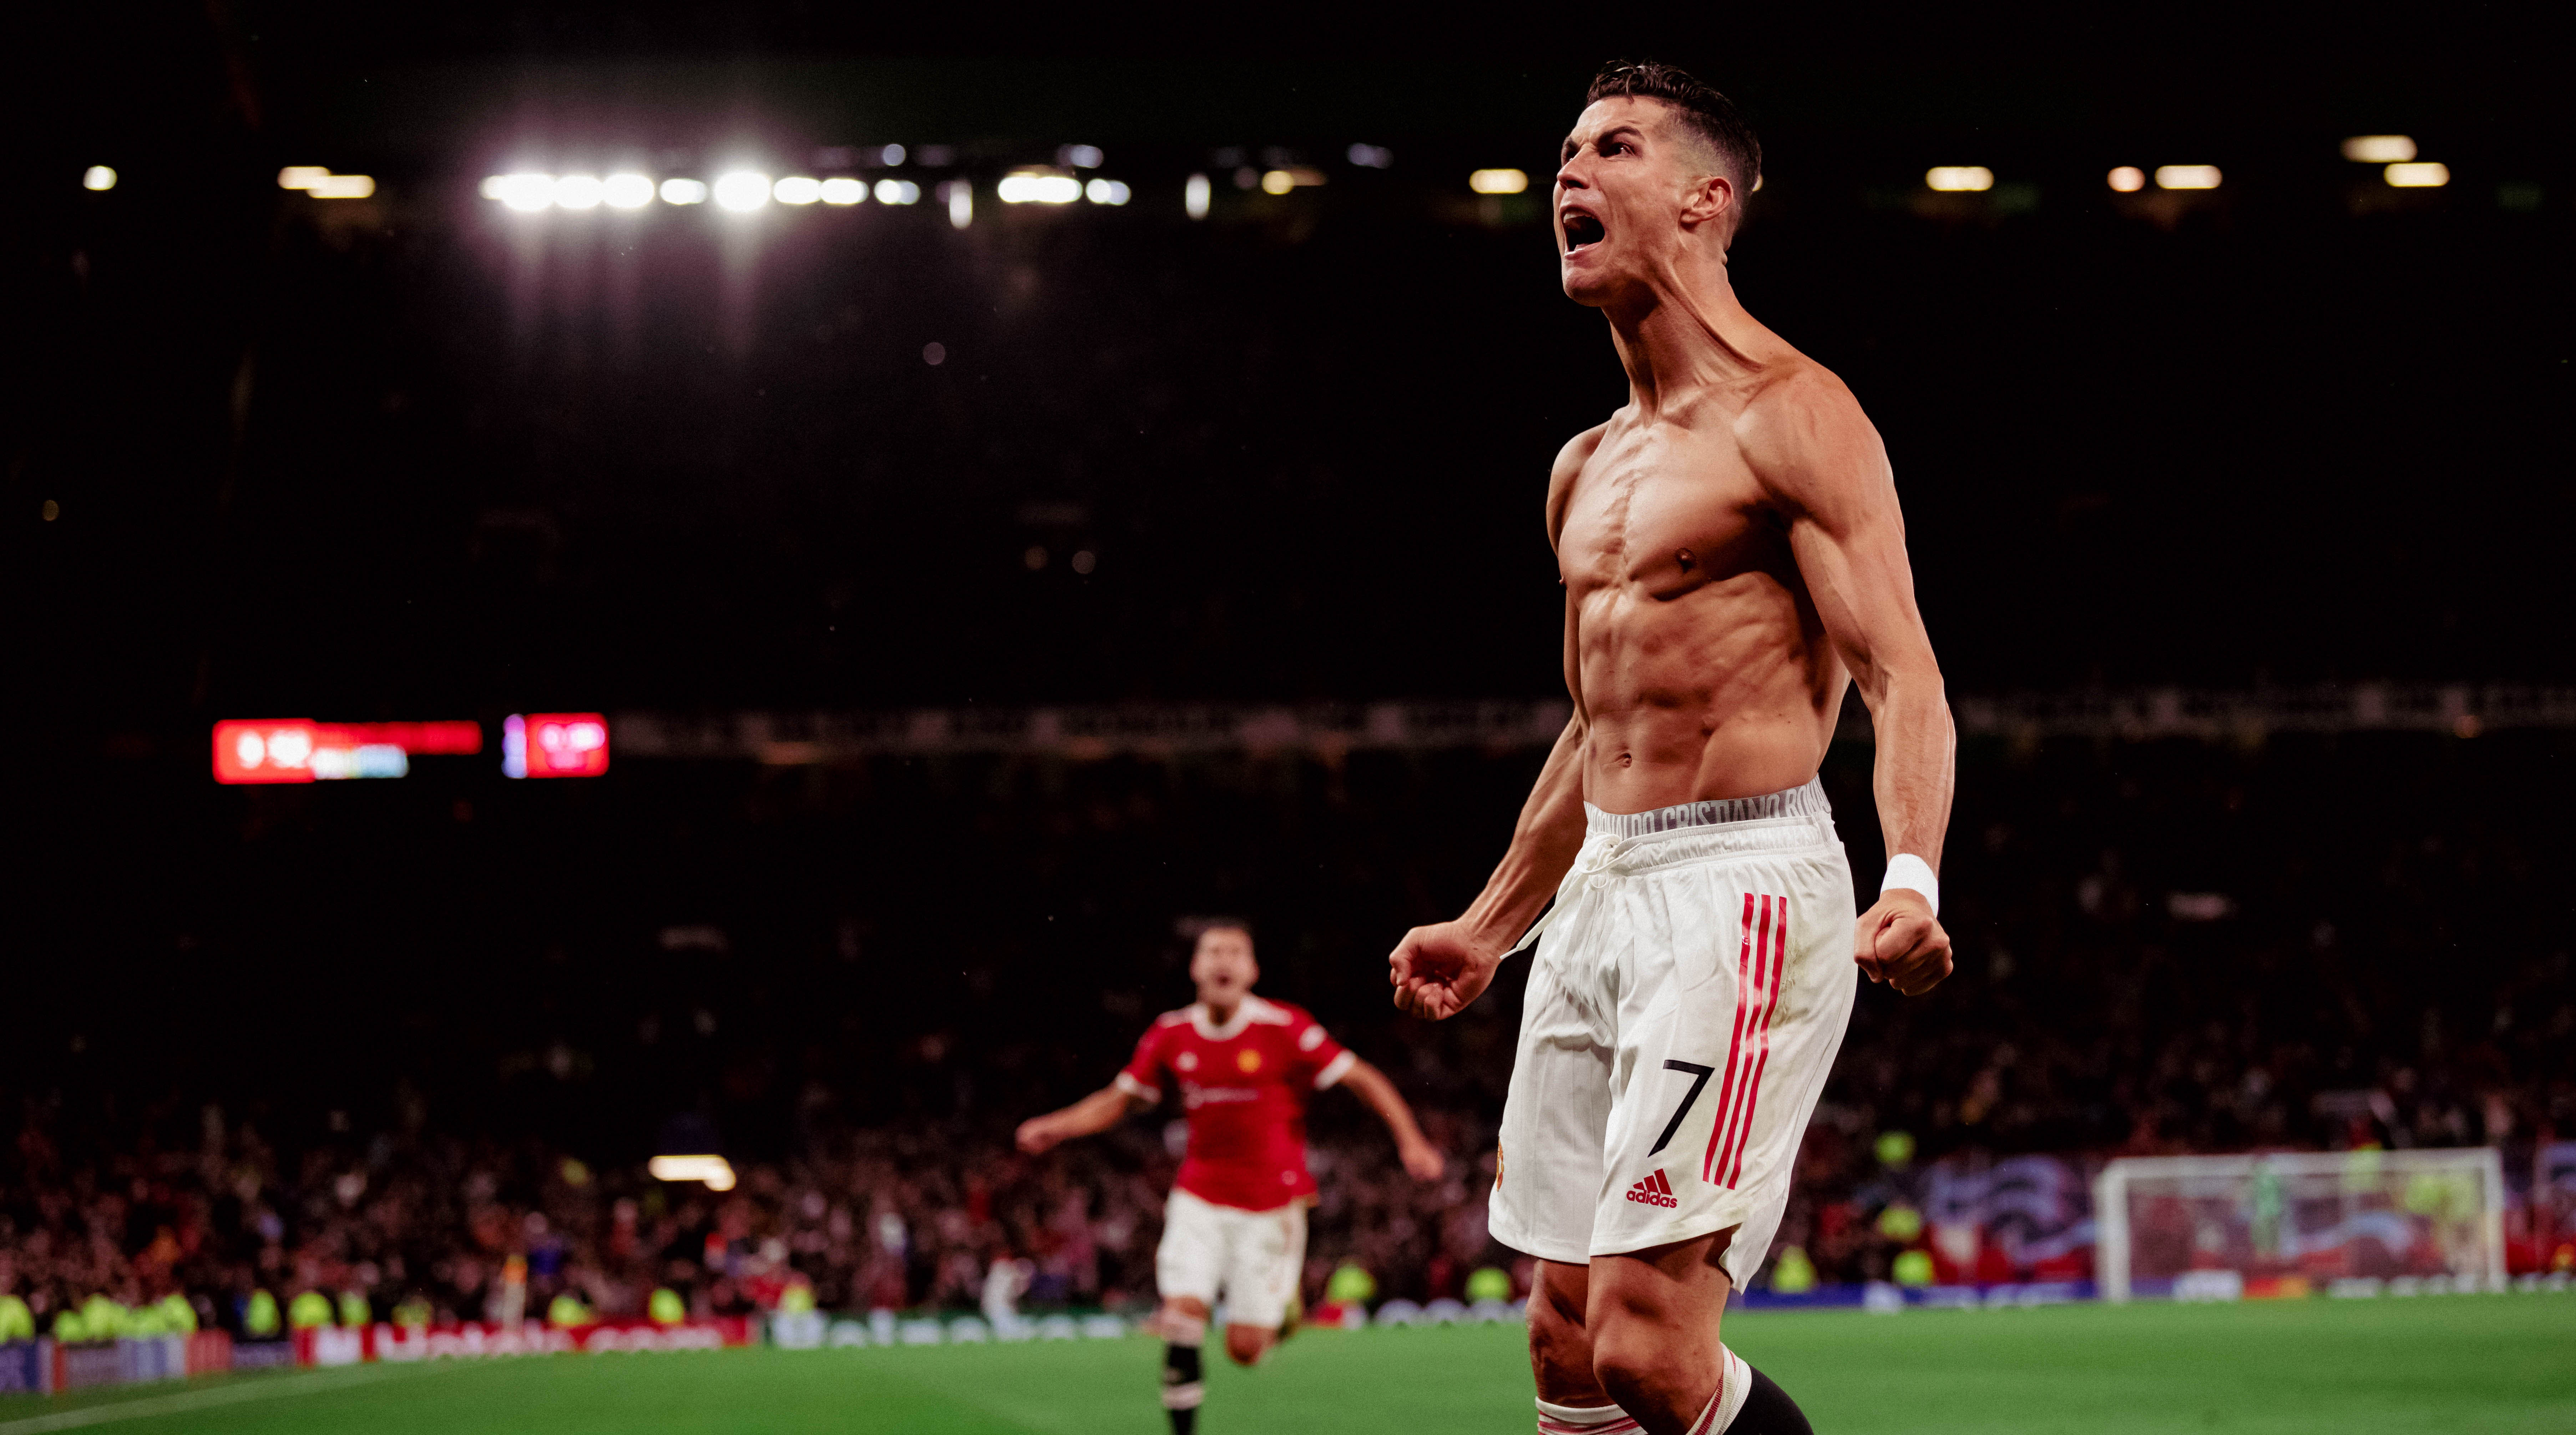 SIIUUU!!! Cristiano Ronaldo goal celebration after penalty against